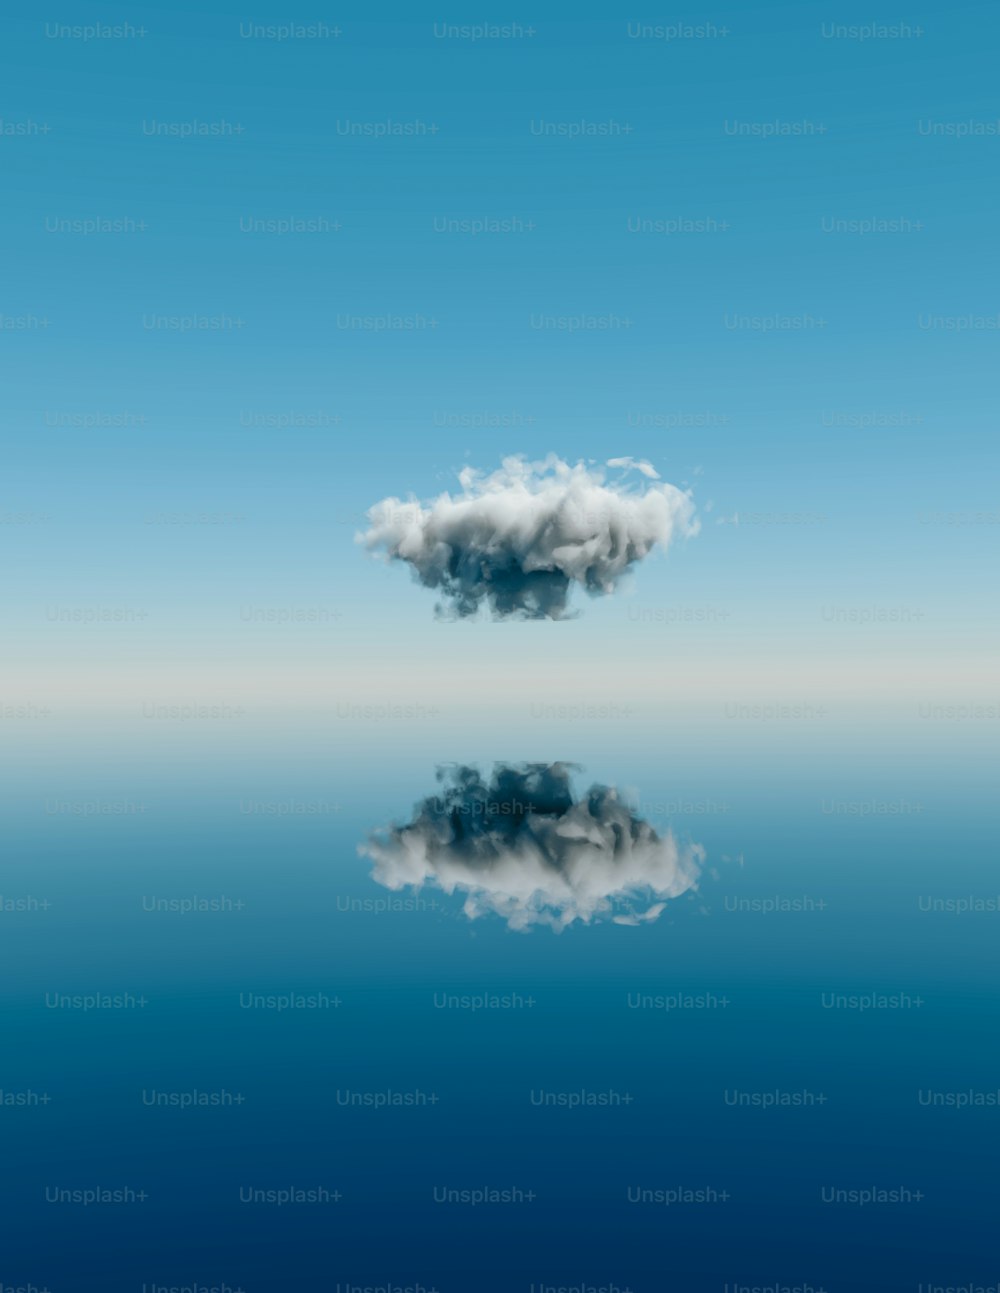 Una nuvola che fluttua nel cielo sopra uno specchio d'acqua